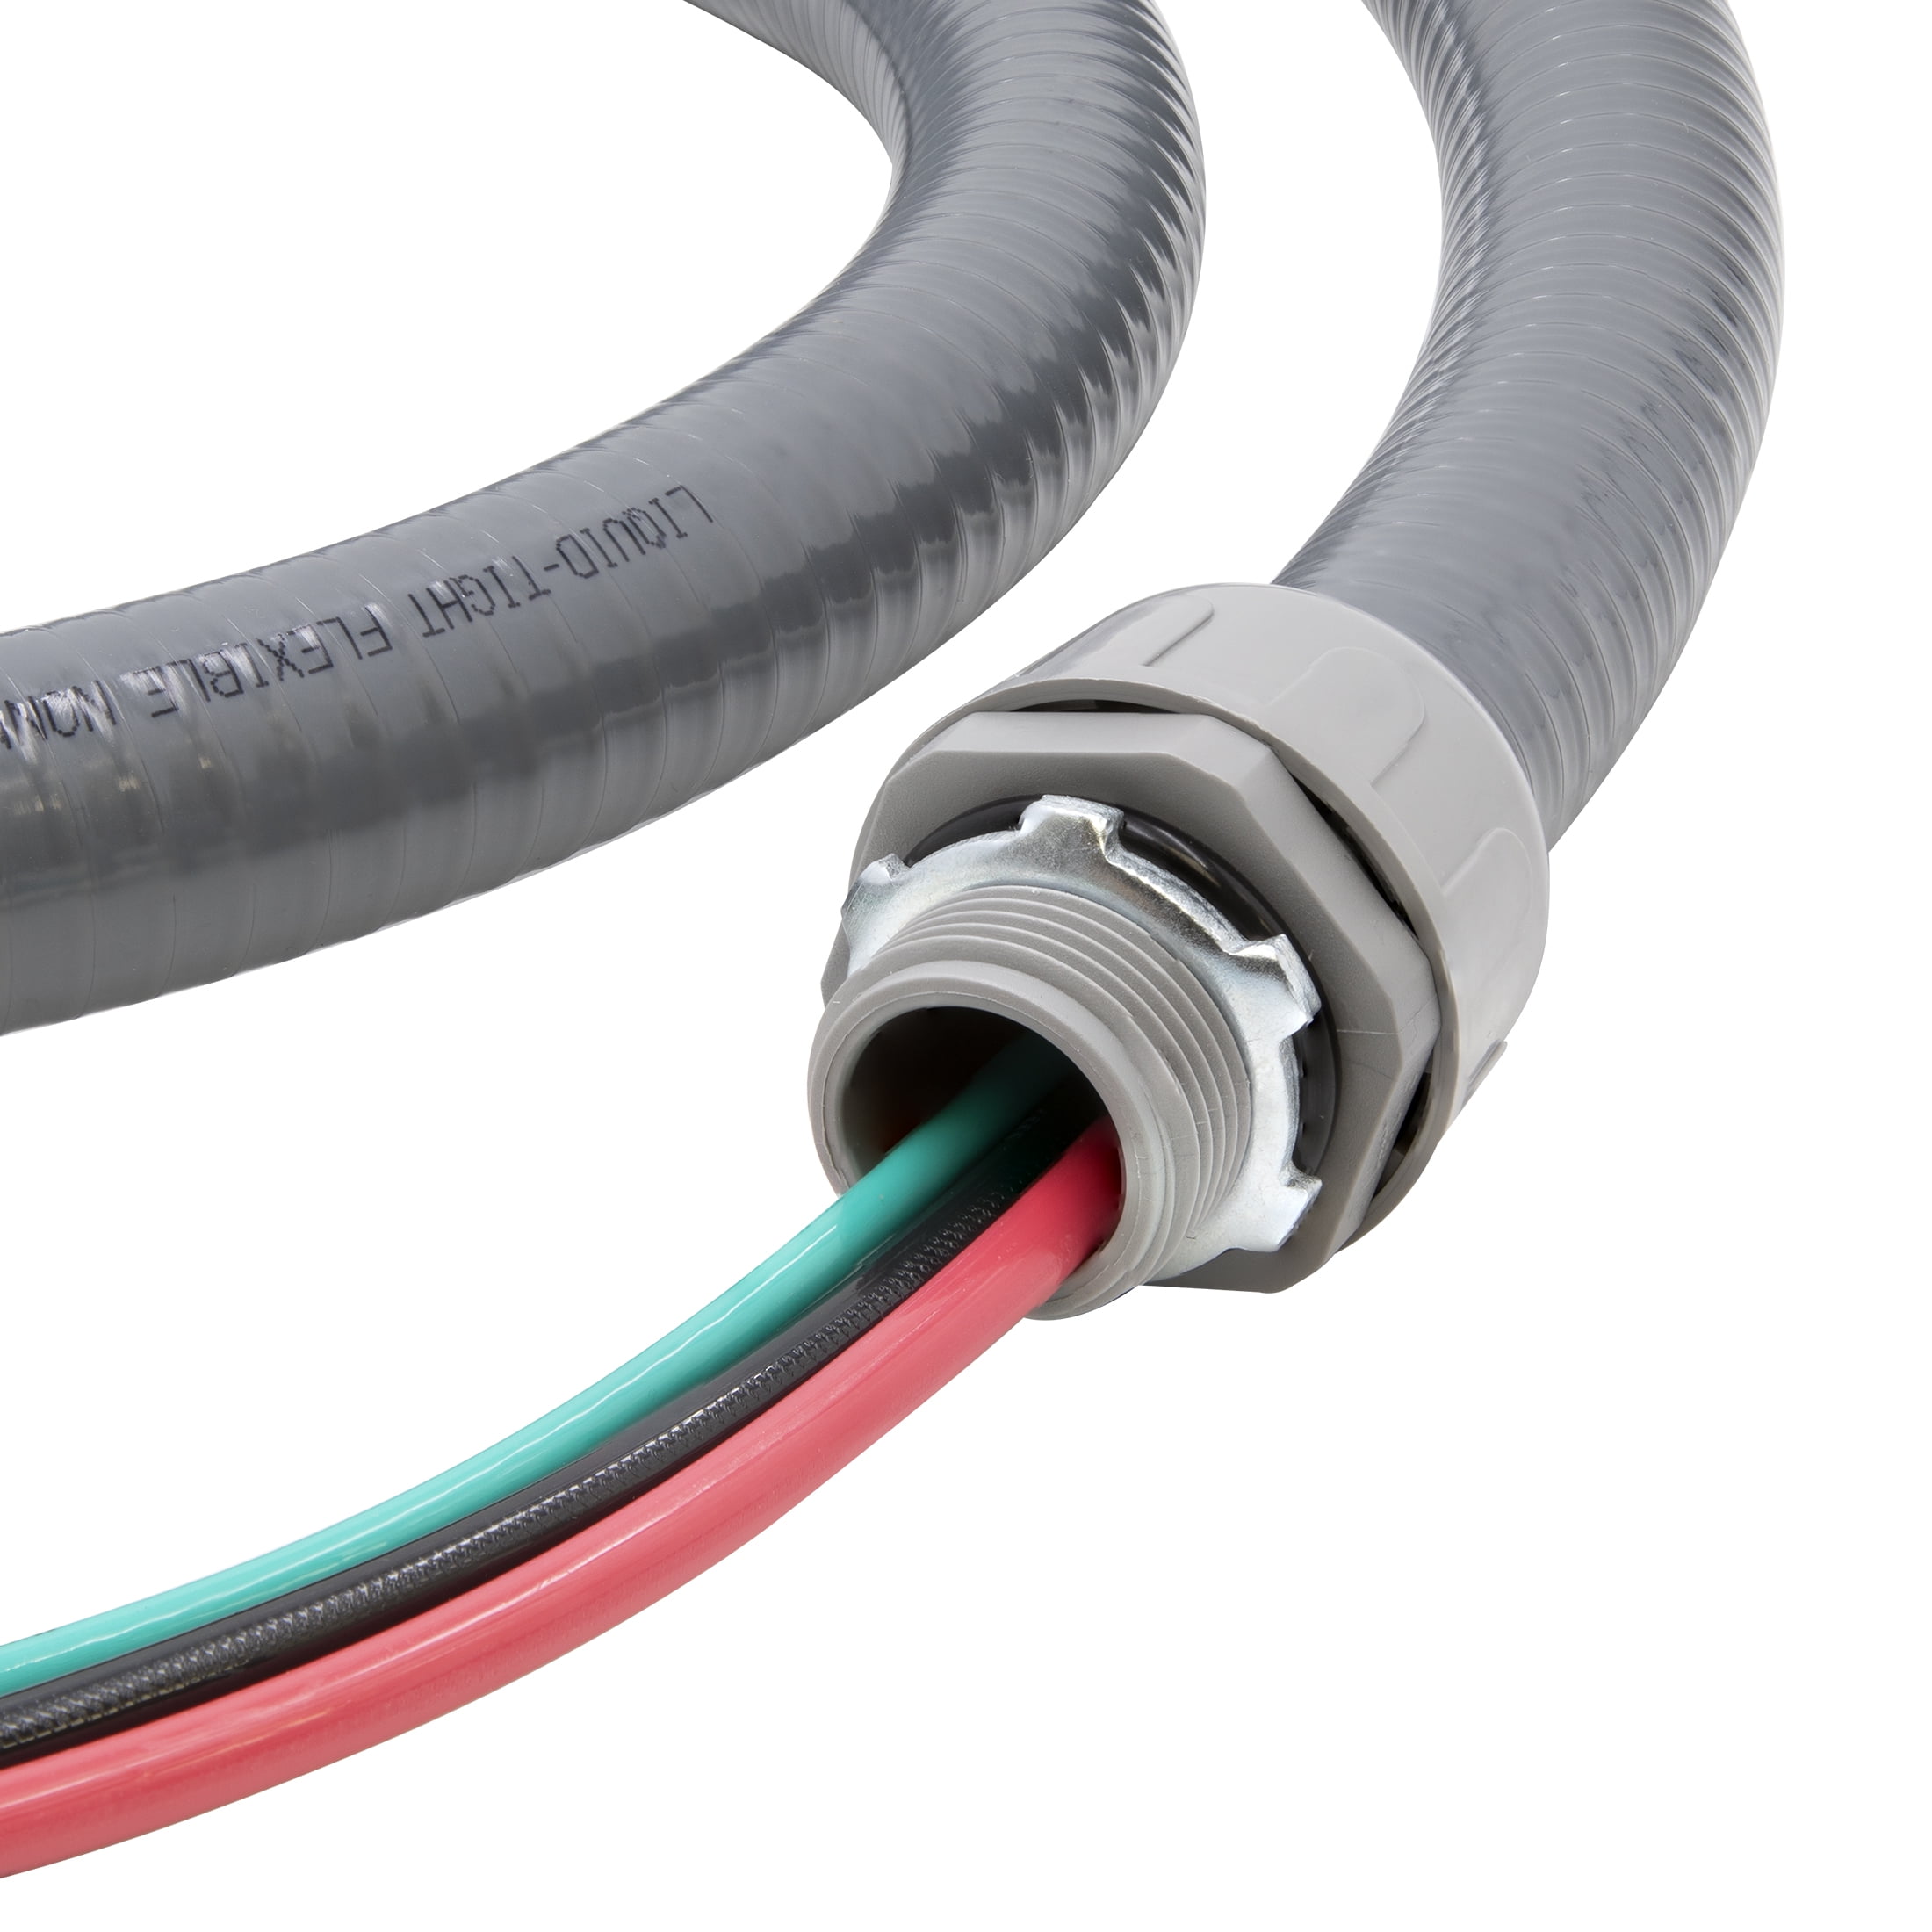 NON-METALLIC FLEXIBLE PVC CONDUIT A/C WHIP CABLE – A&R Supply